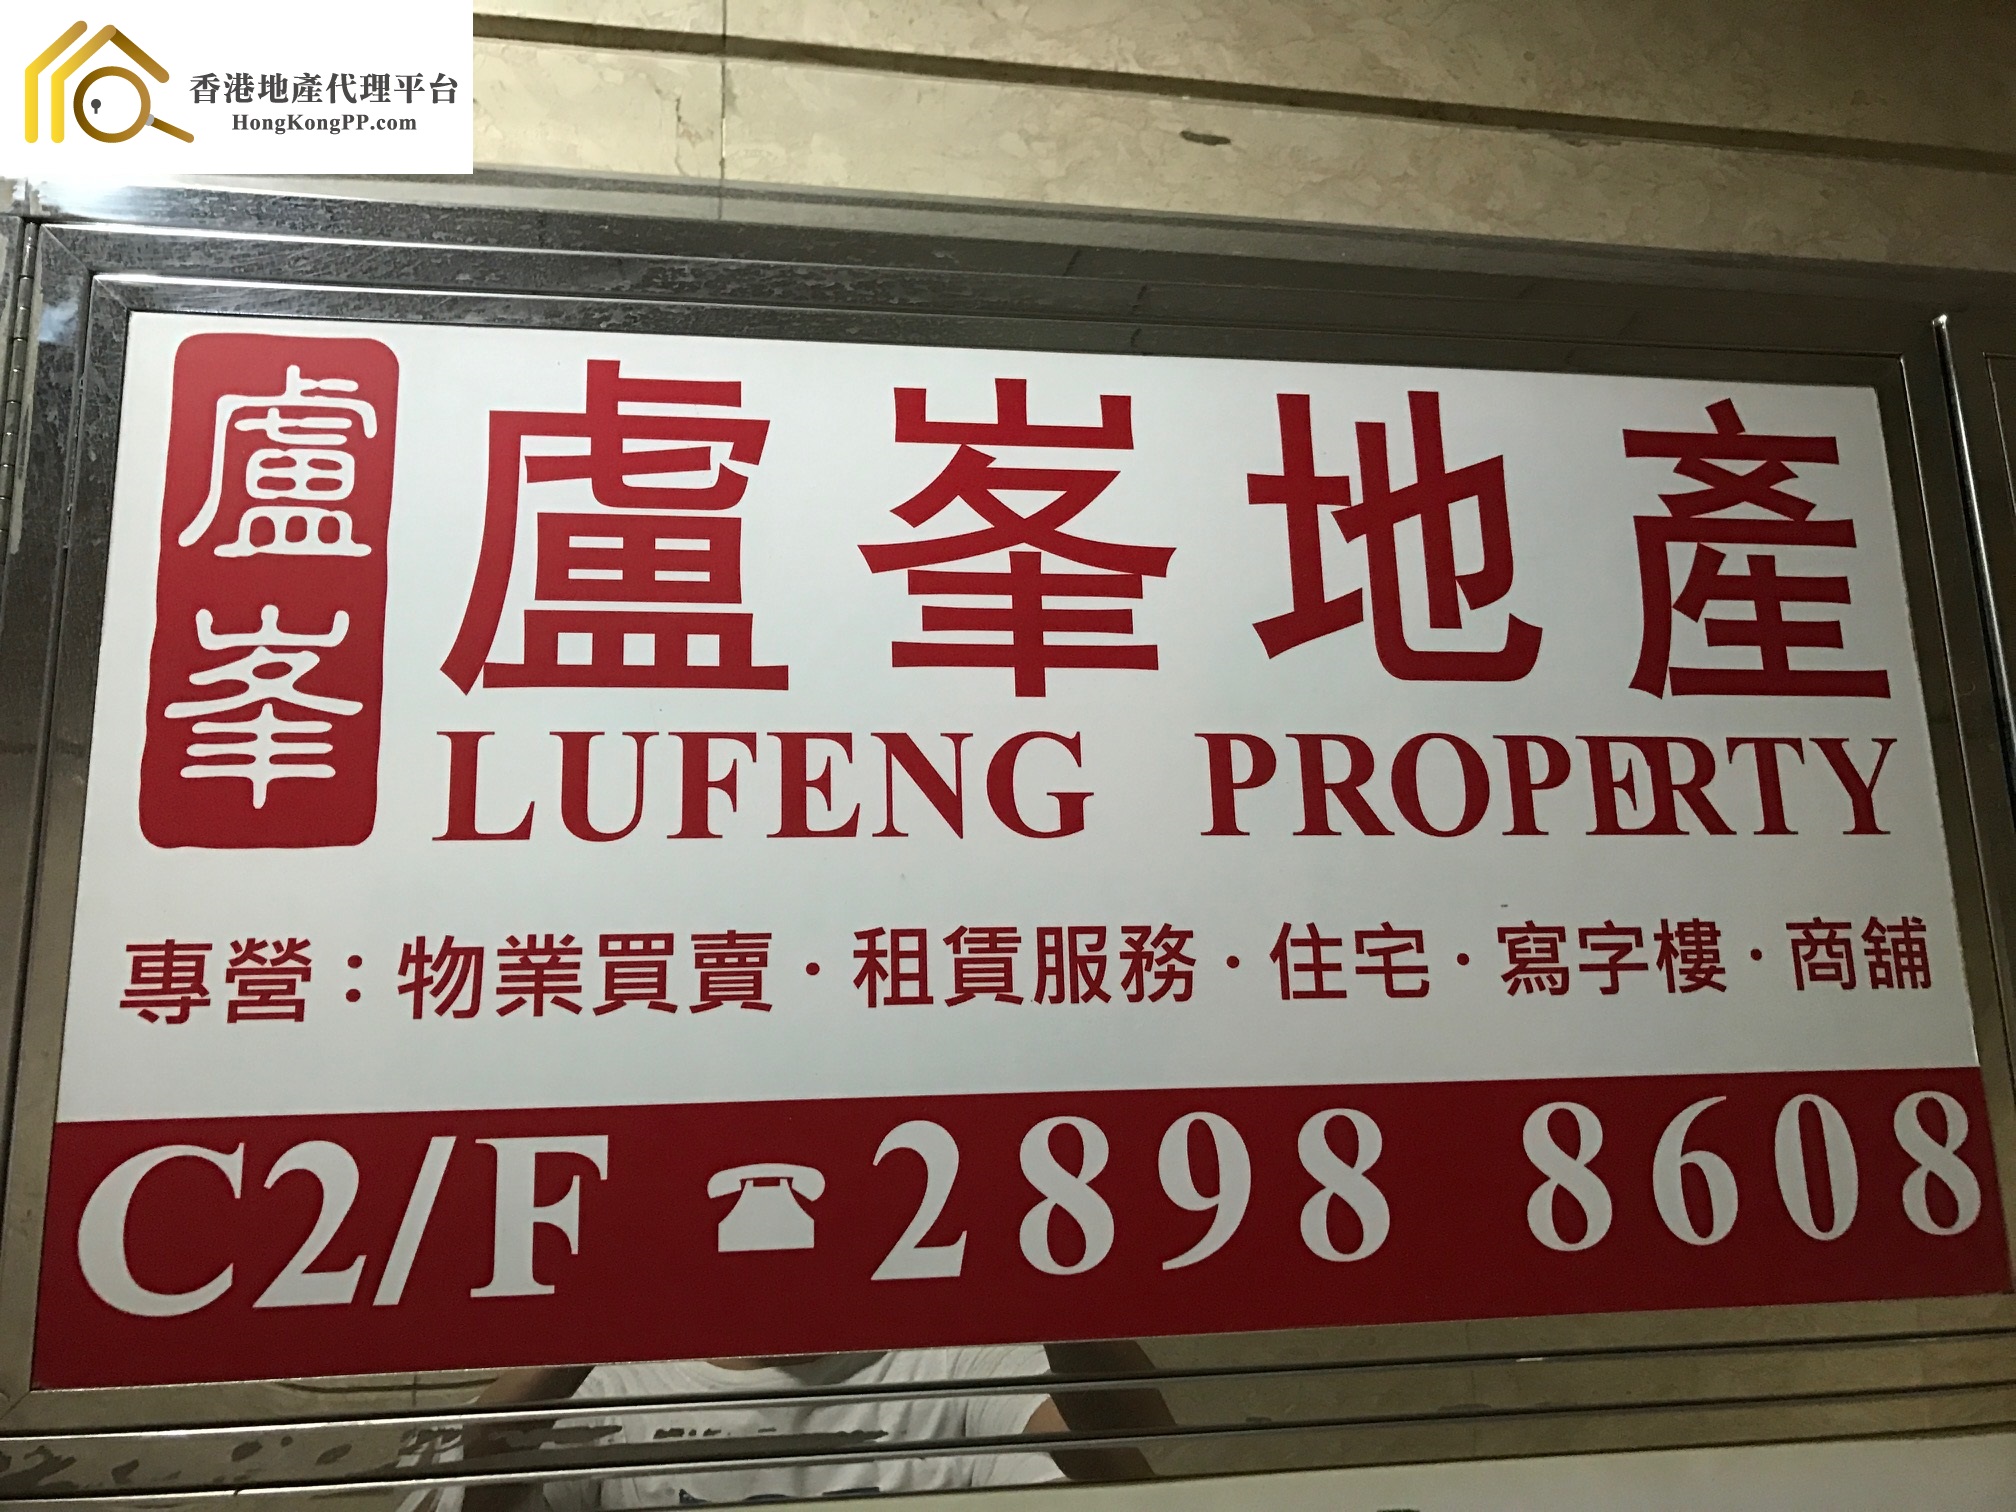 商舖地產代理: 盧峯地產 Lufeng Property